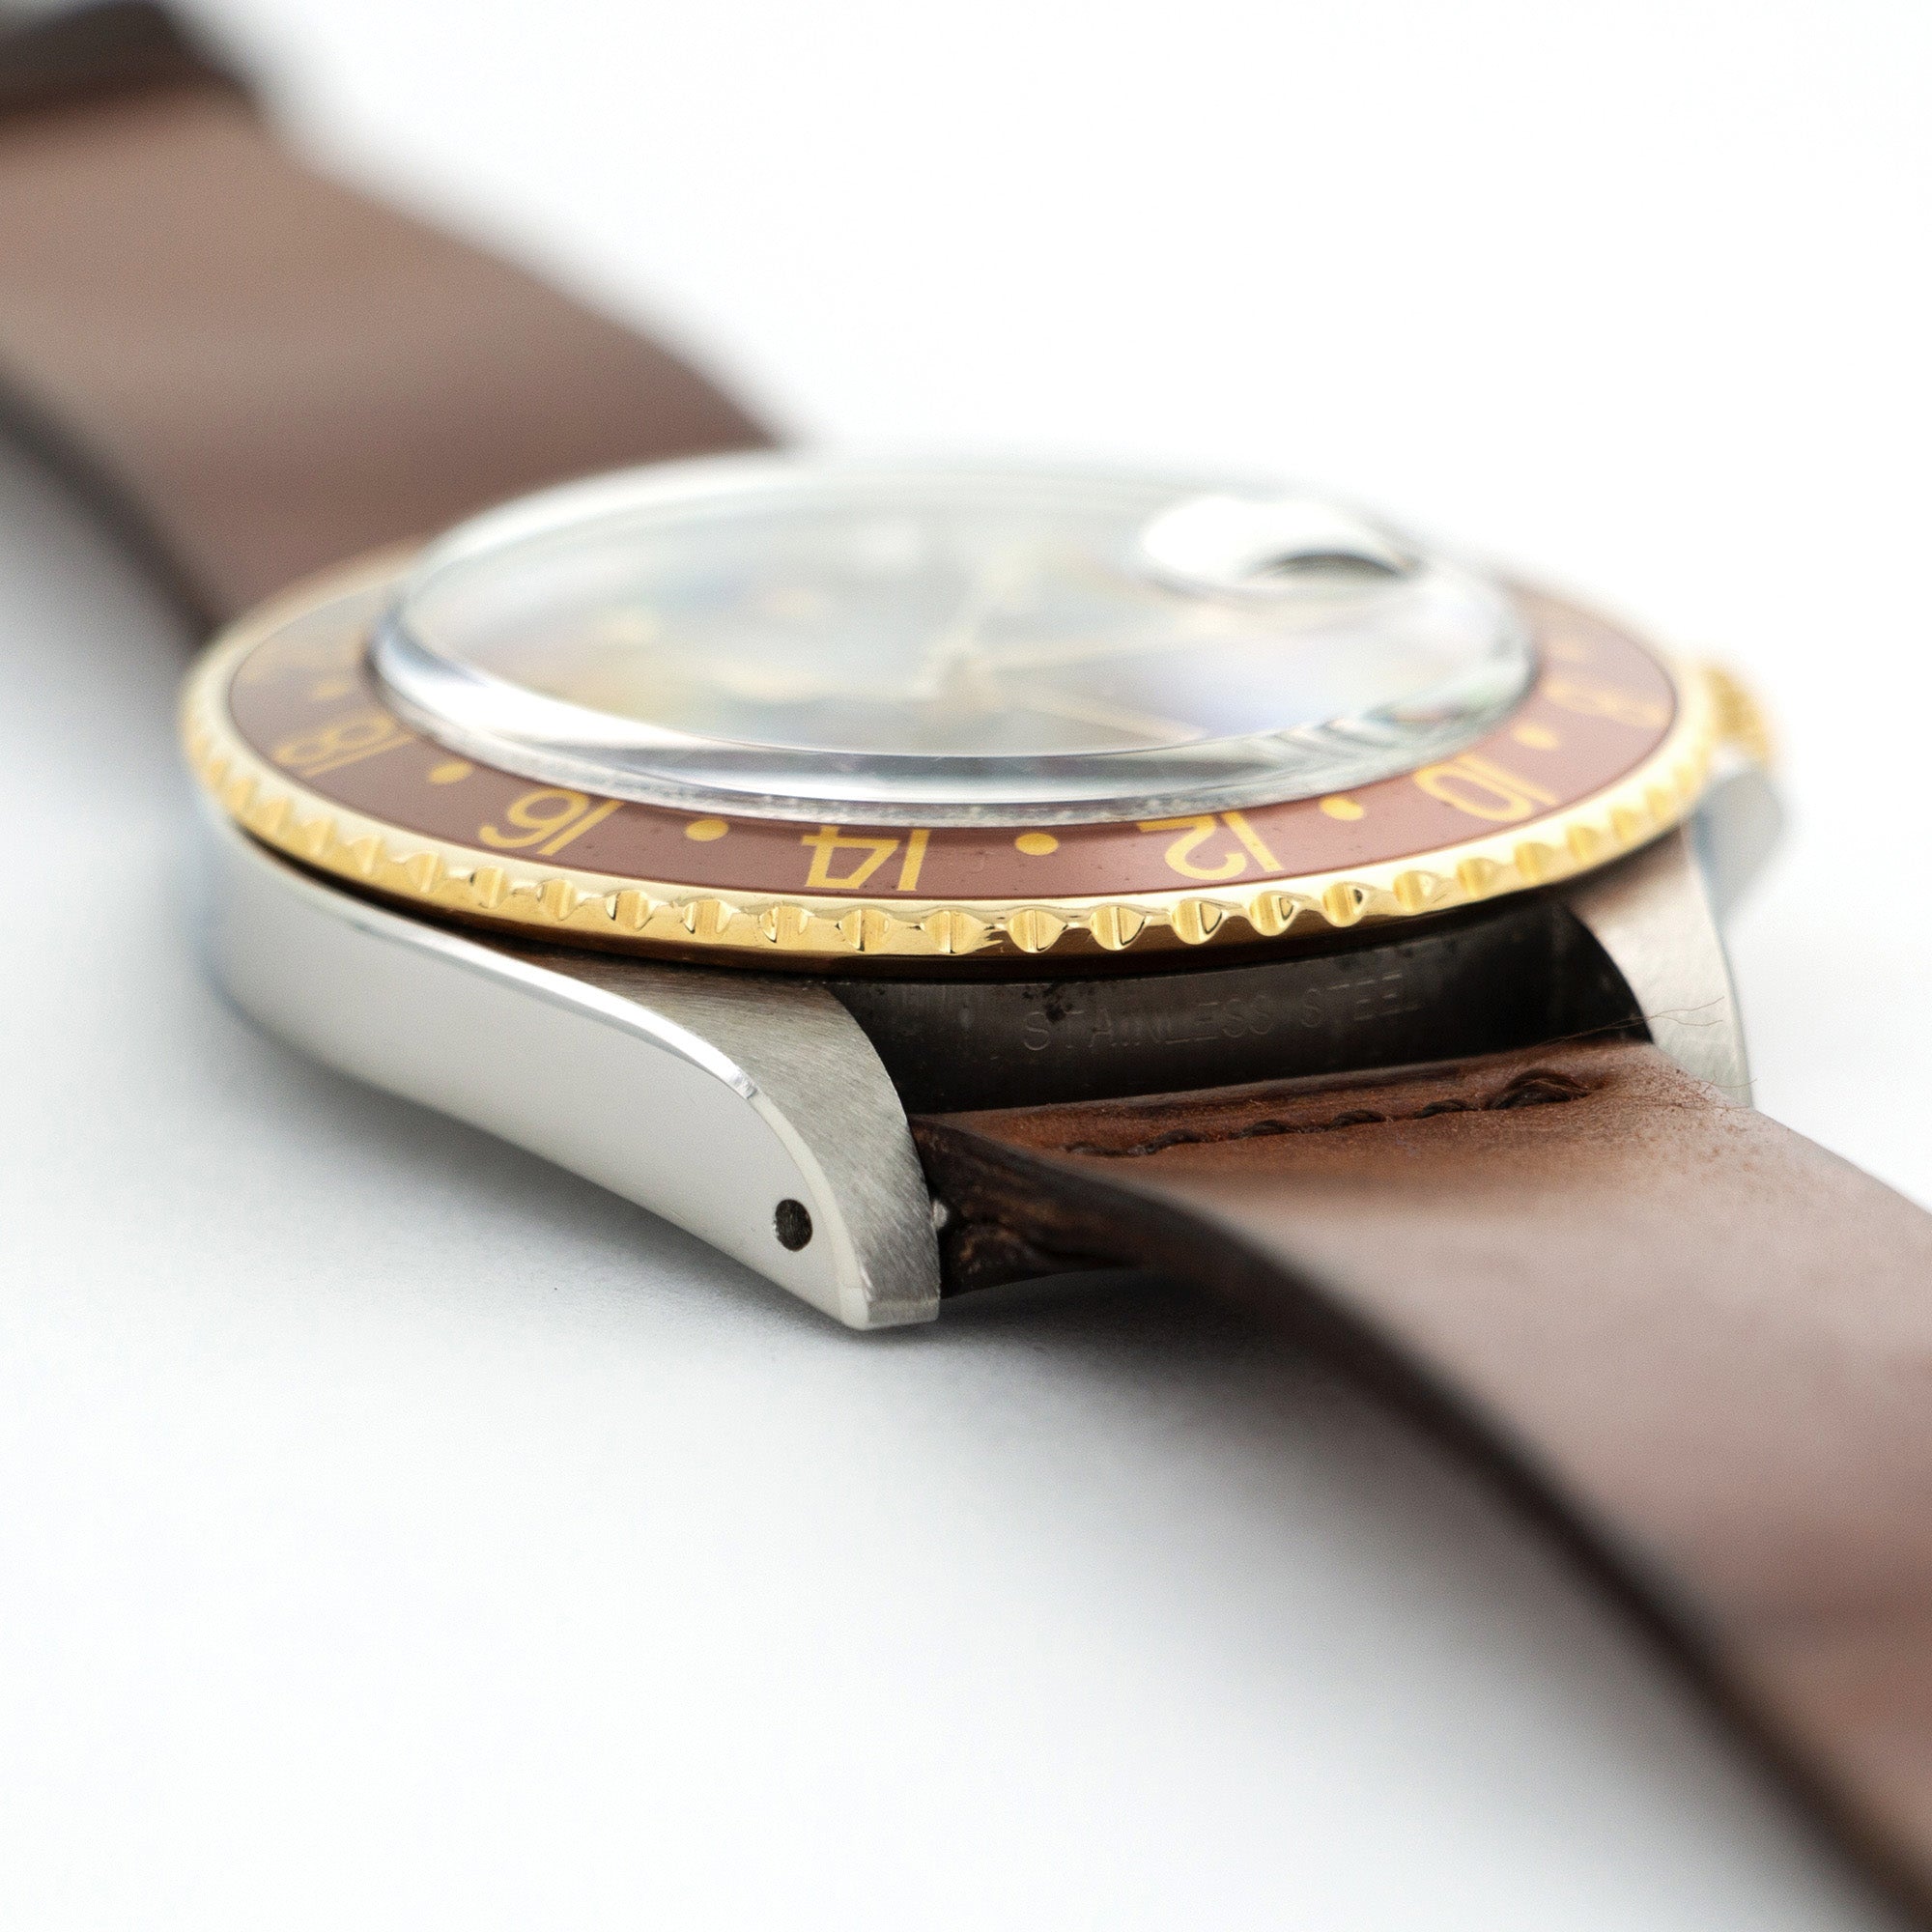 Rolex - Rolex GMT-Master Root Beer Watch Ref. 16753 - The Keystone Watches